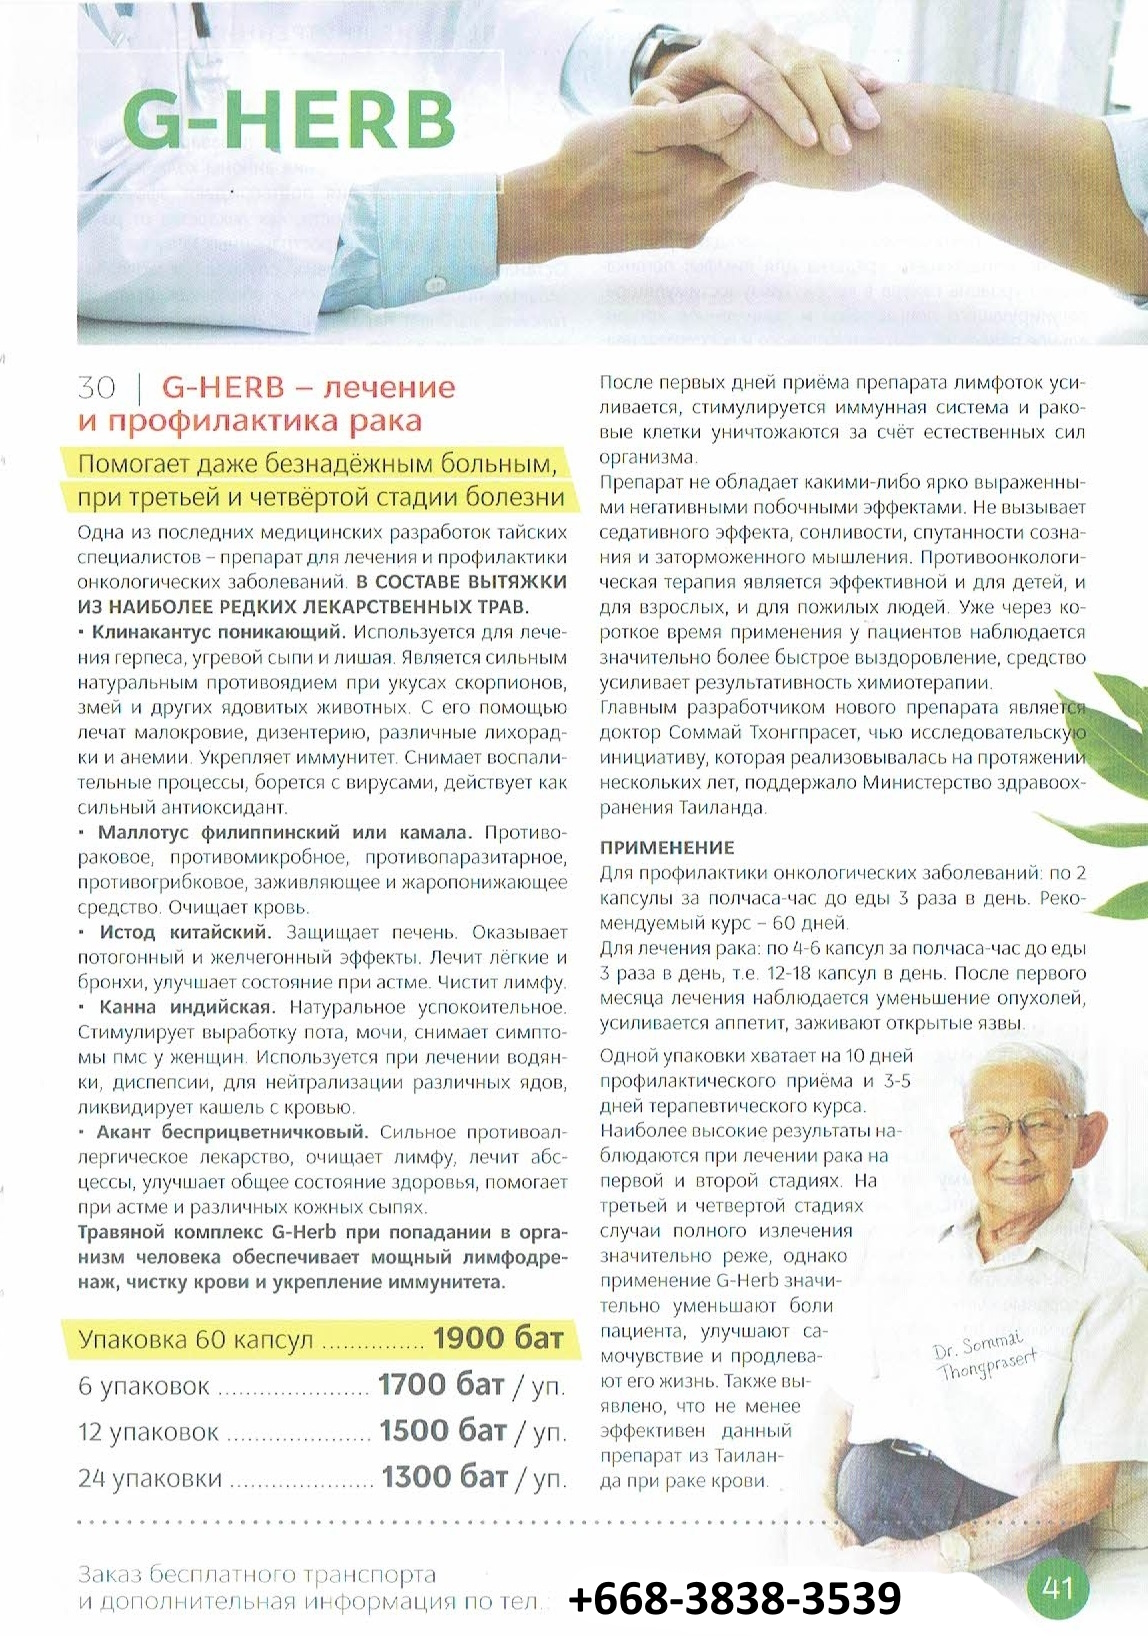 Doctor Holland аптека тайской медицины в Паттайе Таиланде каталог страница 41